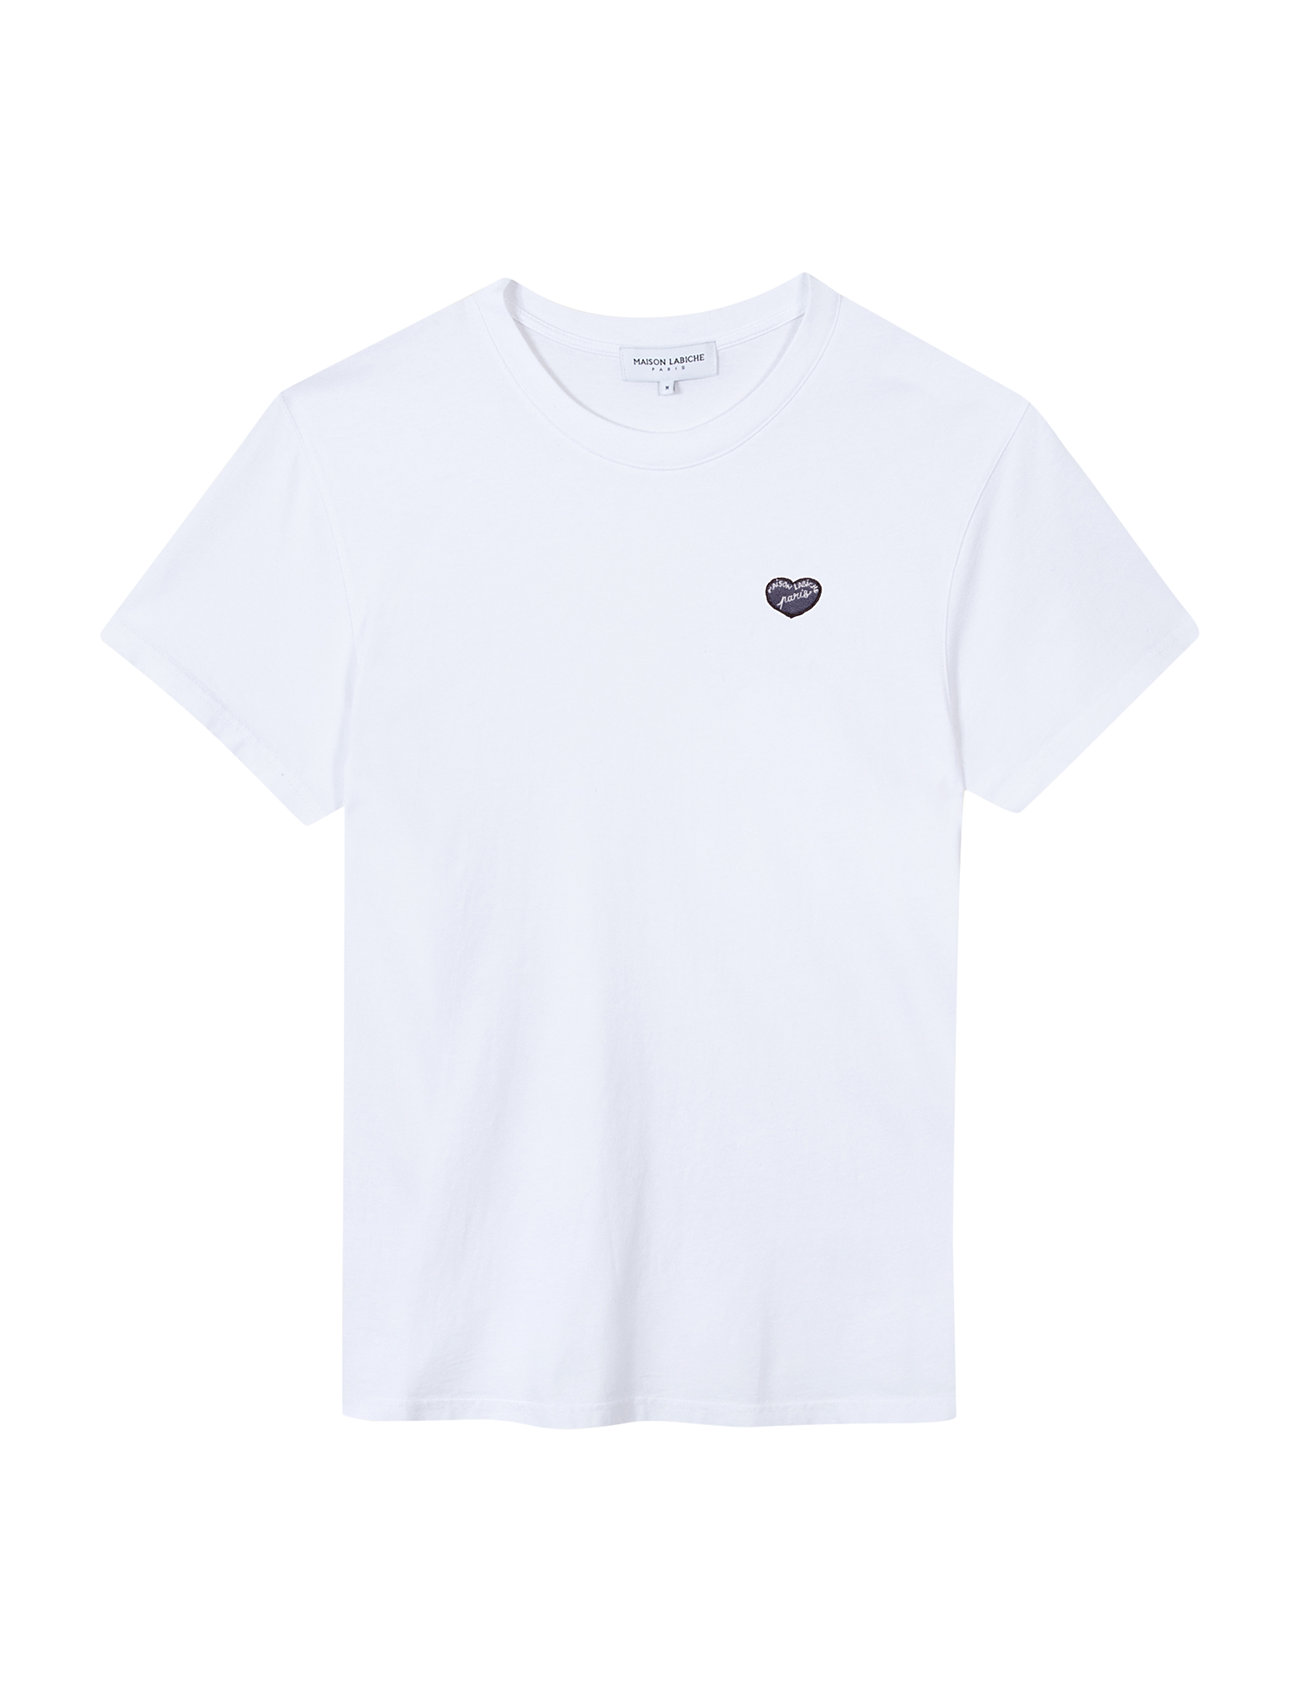 Popincourt Patch Coeur/Gots Designers T-shirts Short-sleeved White Maison Labiche Paris